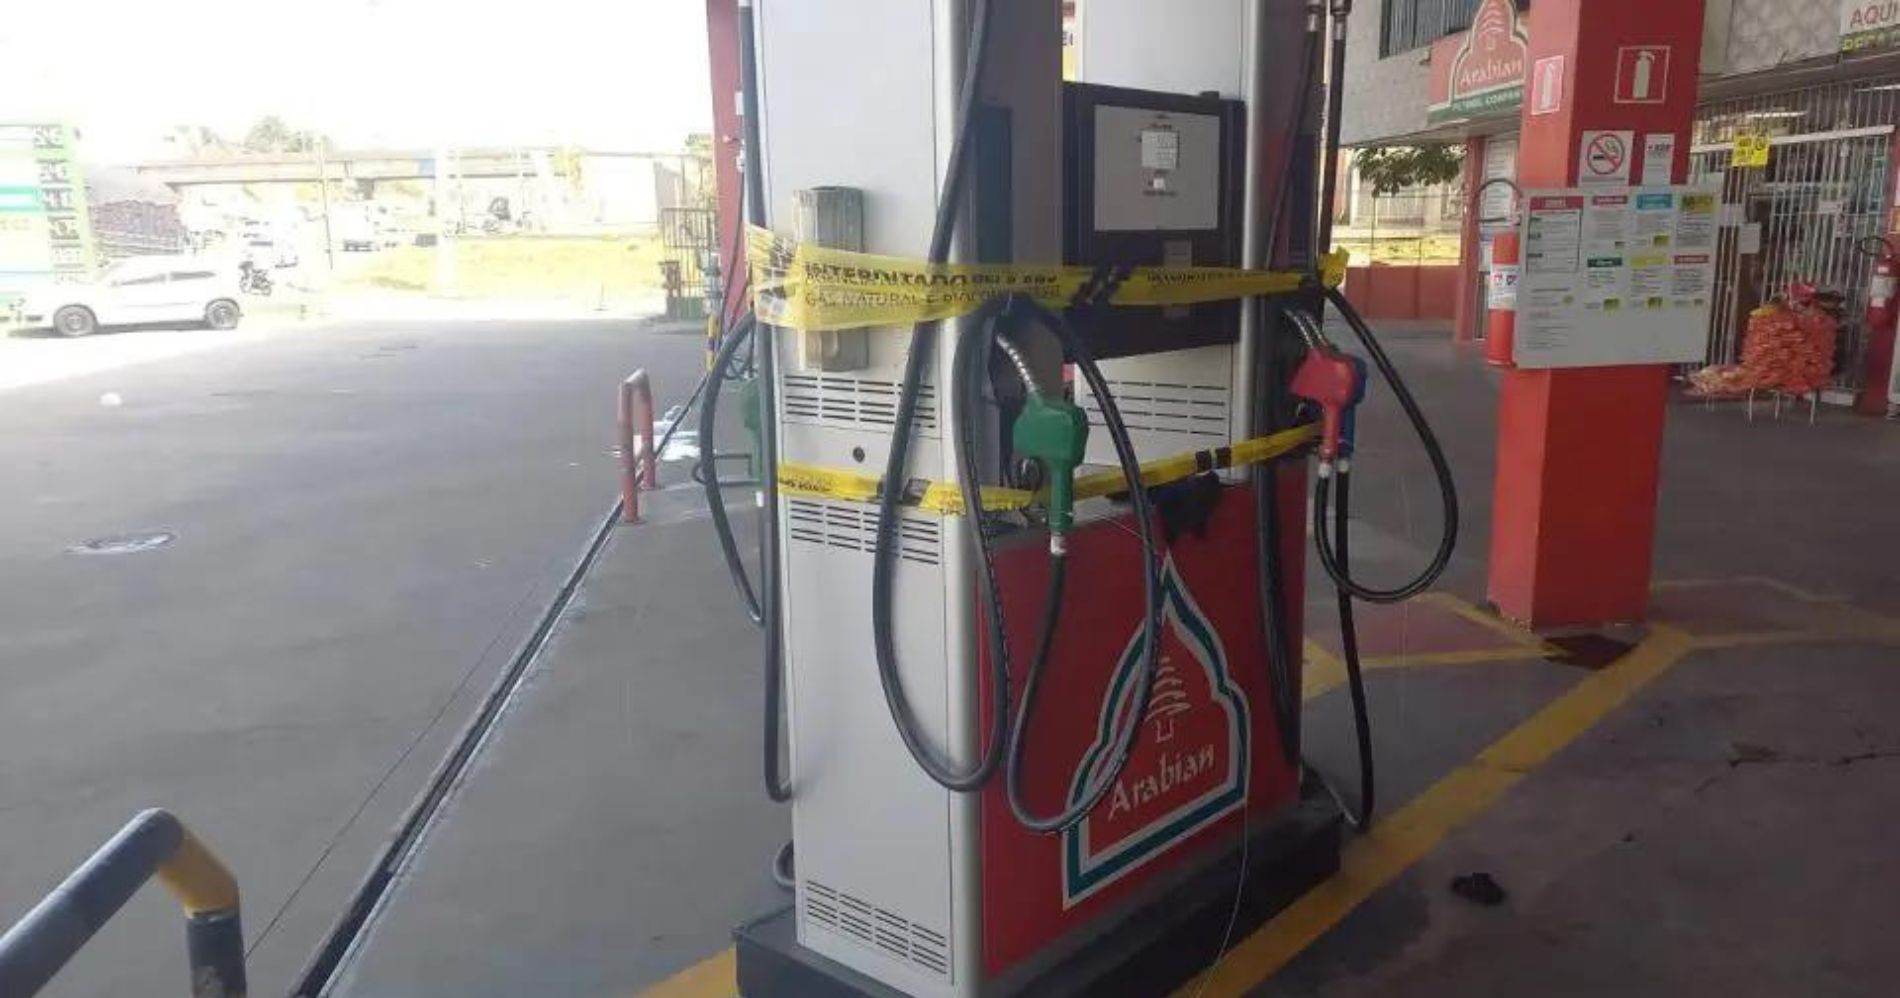 Gerente suspeito de fraudar milhares de litros de gasolina é preso no Atuba: "Certamente haveria problemas no carro"